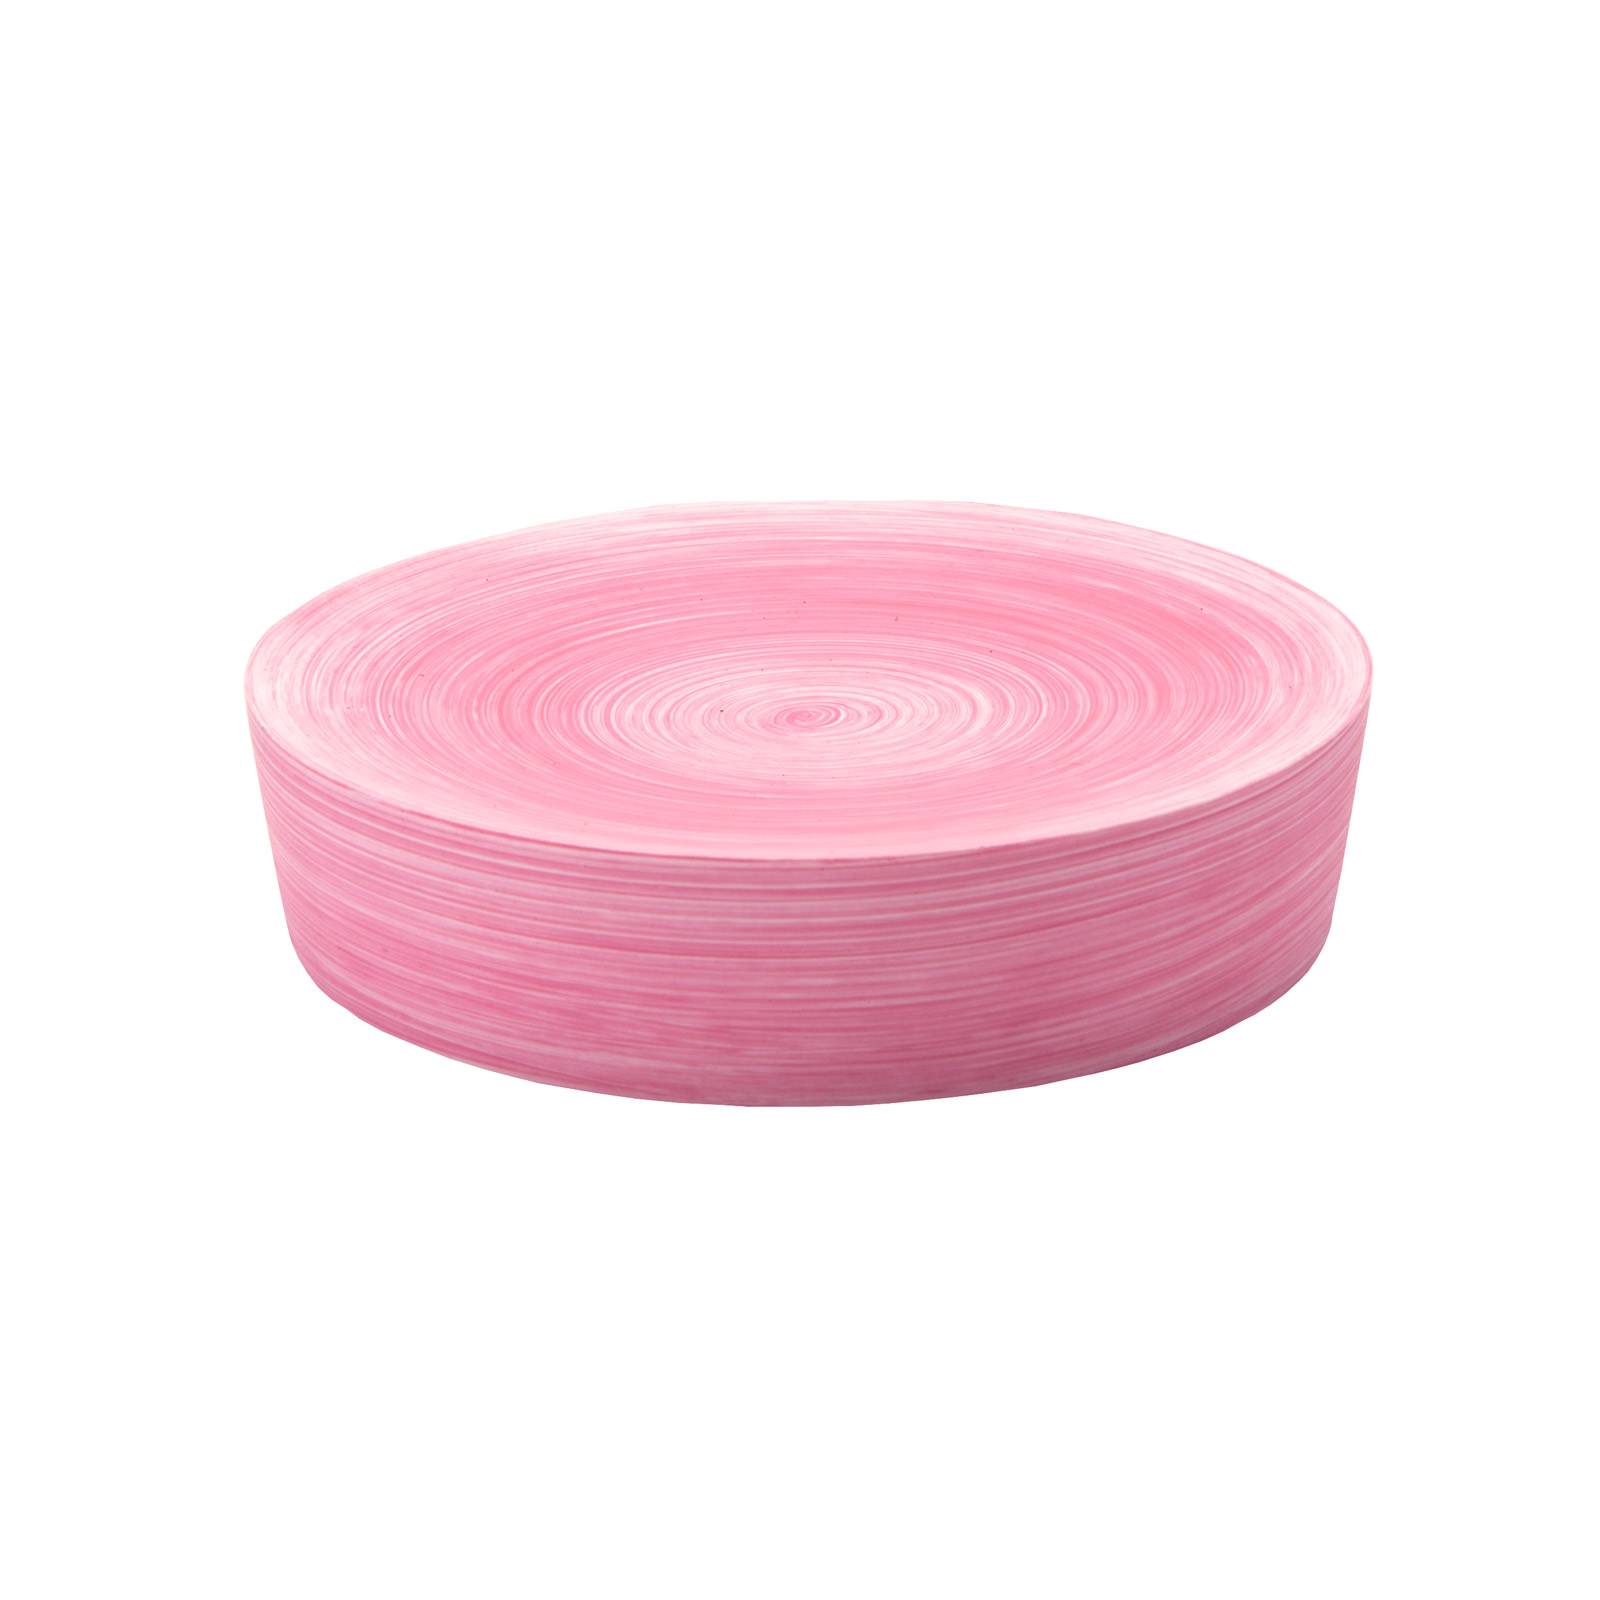 Set di accessori da bagno GEDY in resina rosa